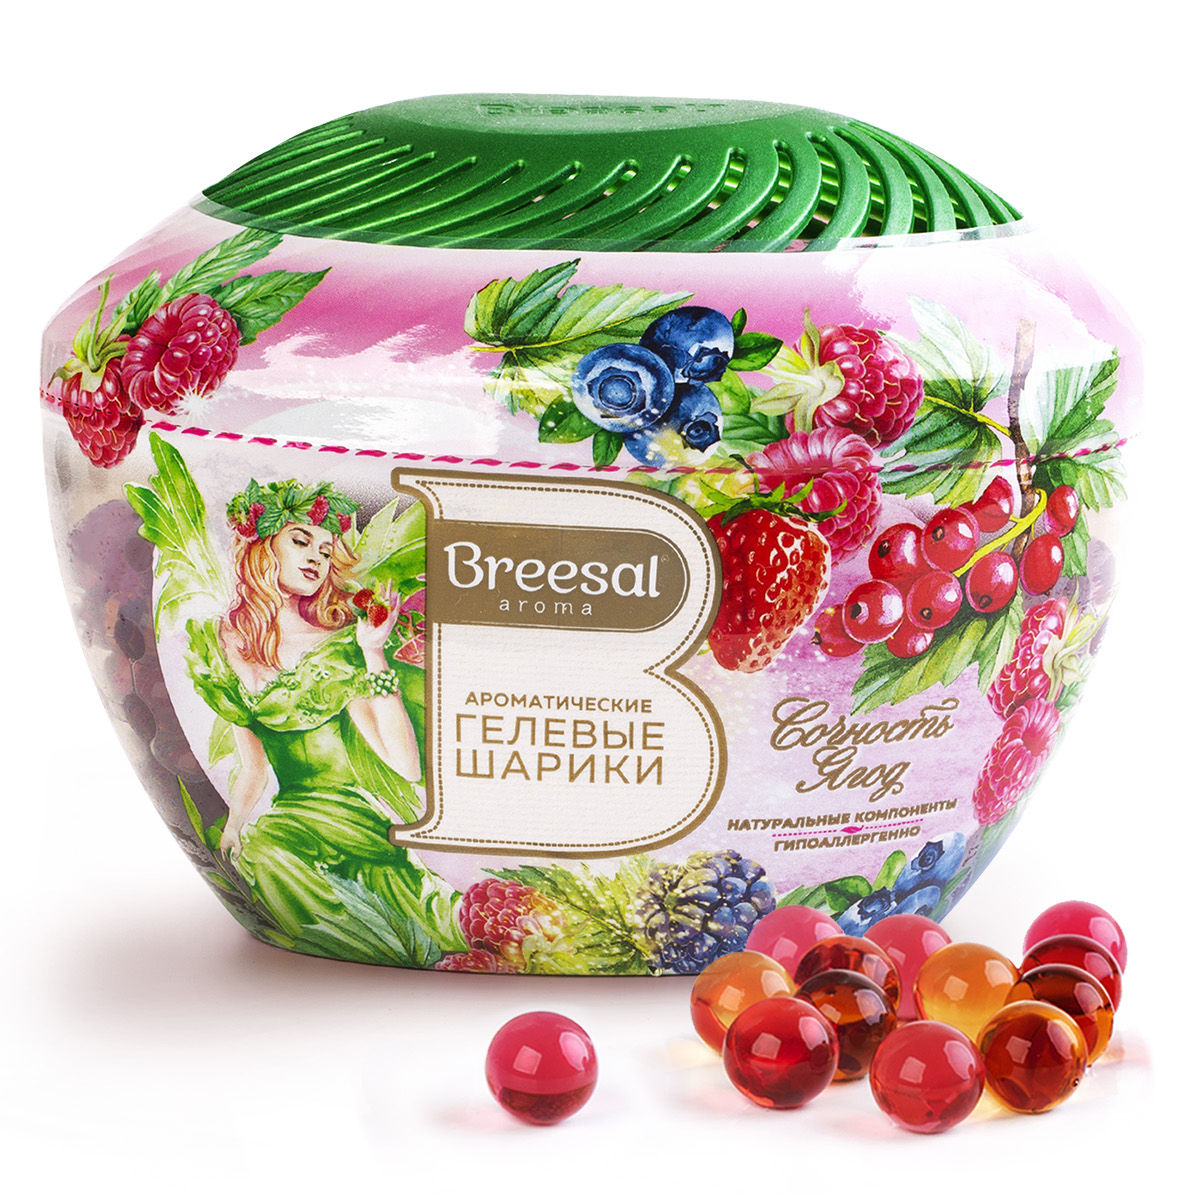 Ароматические гелевые шарики Breesal Fresh Drops Сочность ягод, 215 мл пеленки угольные шестислойные гелевые для животных 60 х 45 см 10 шт